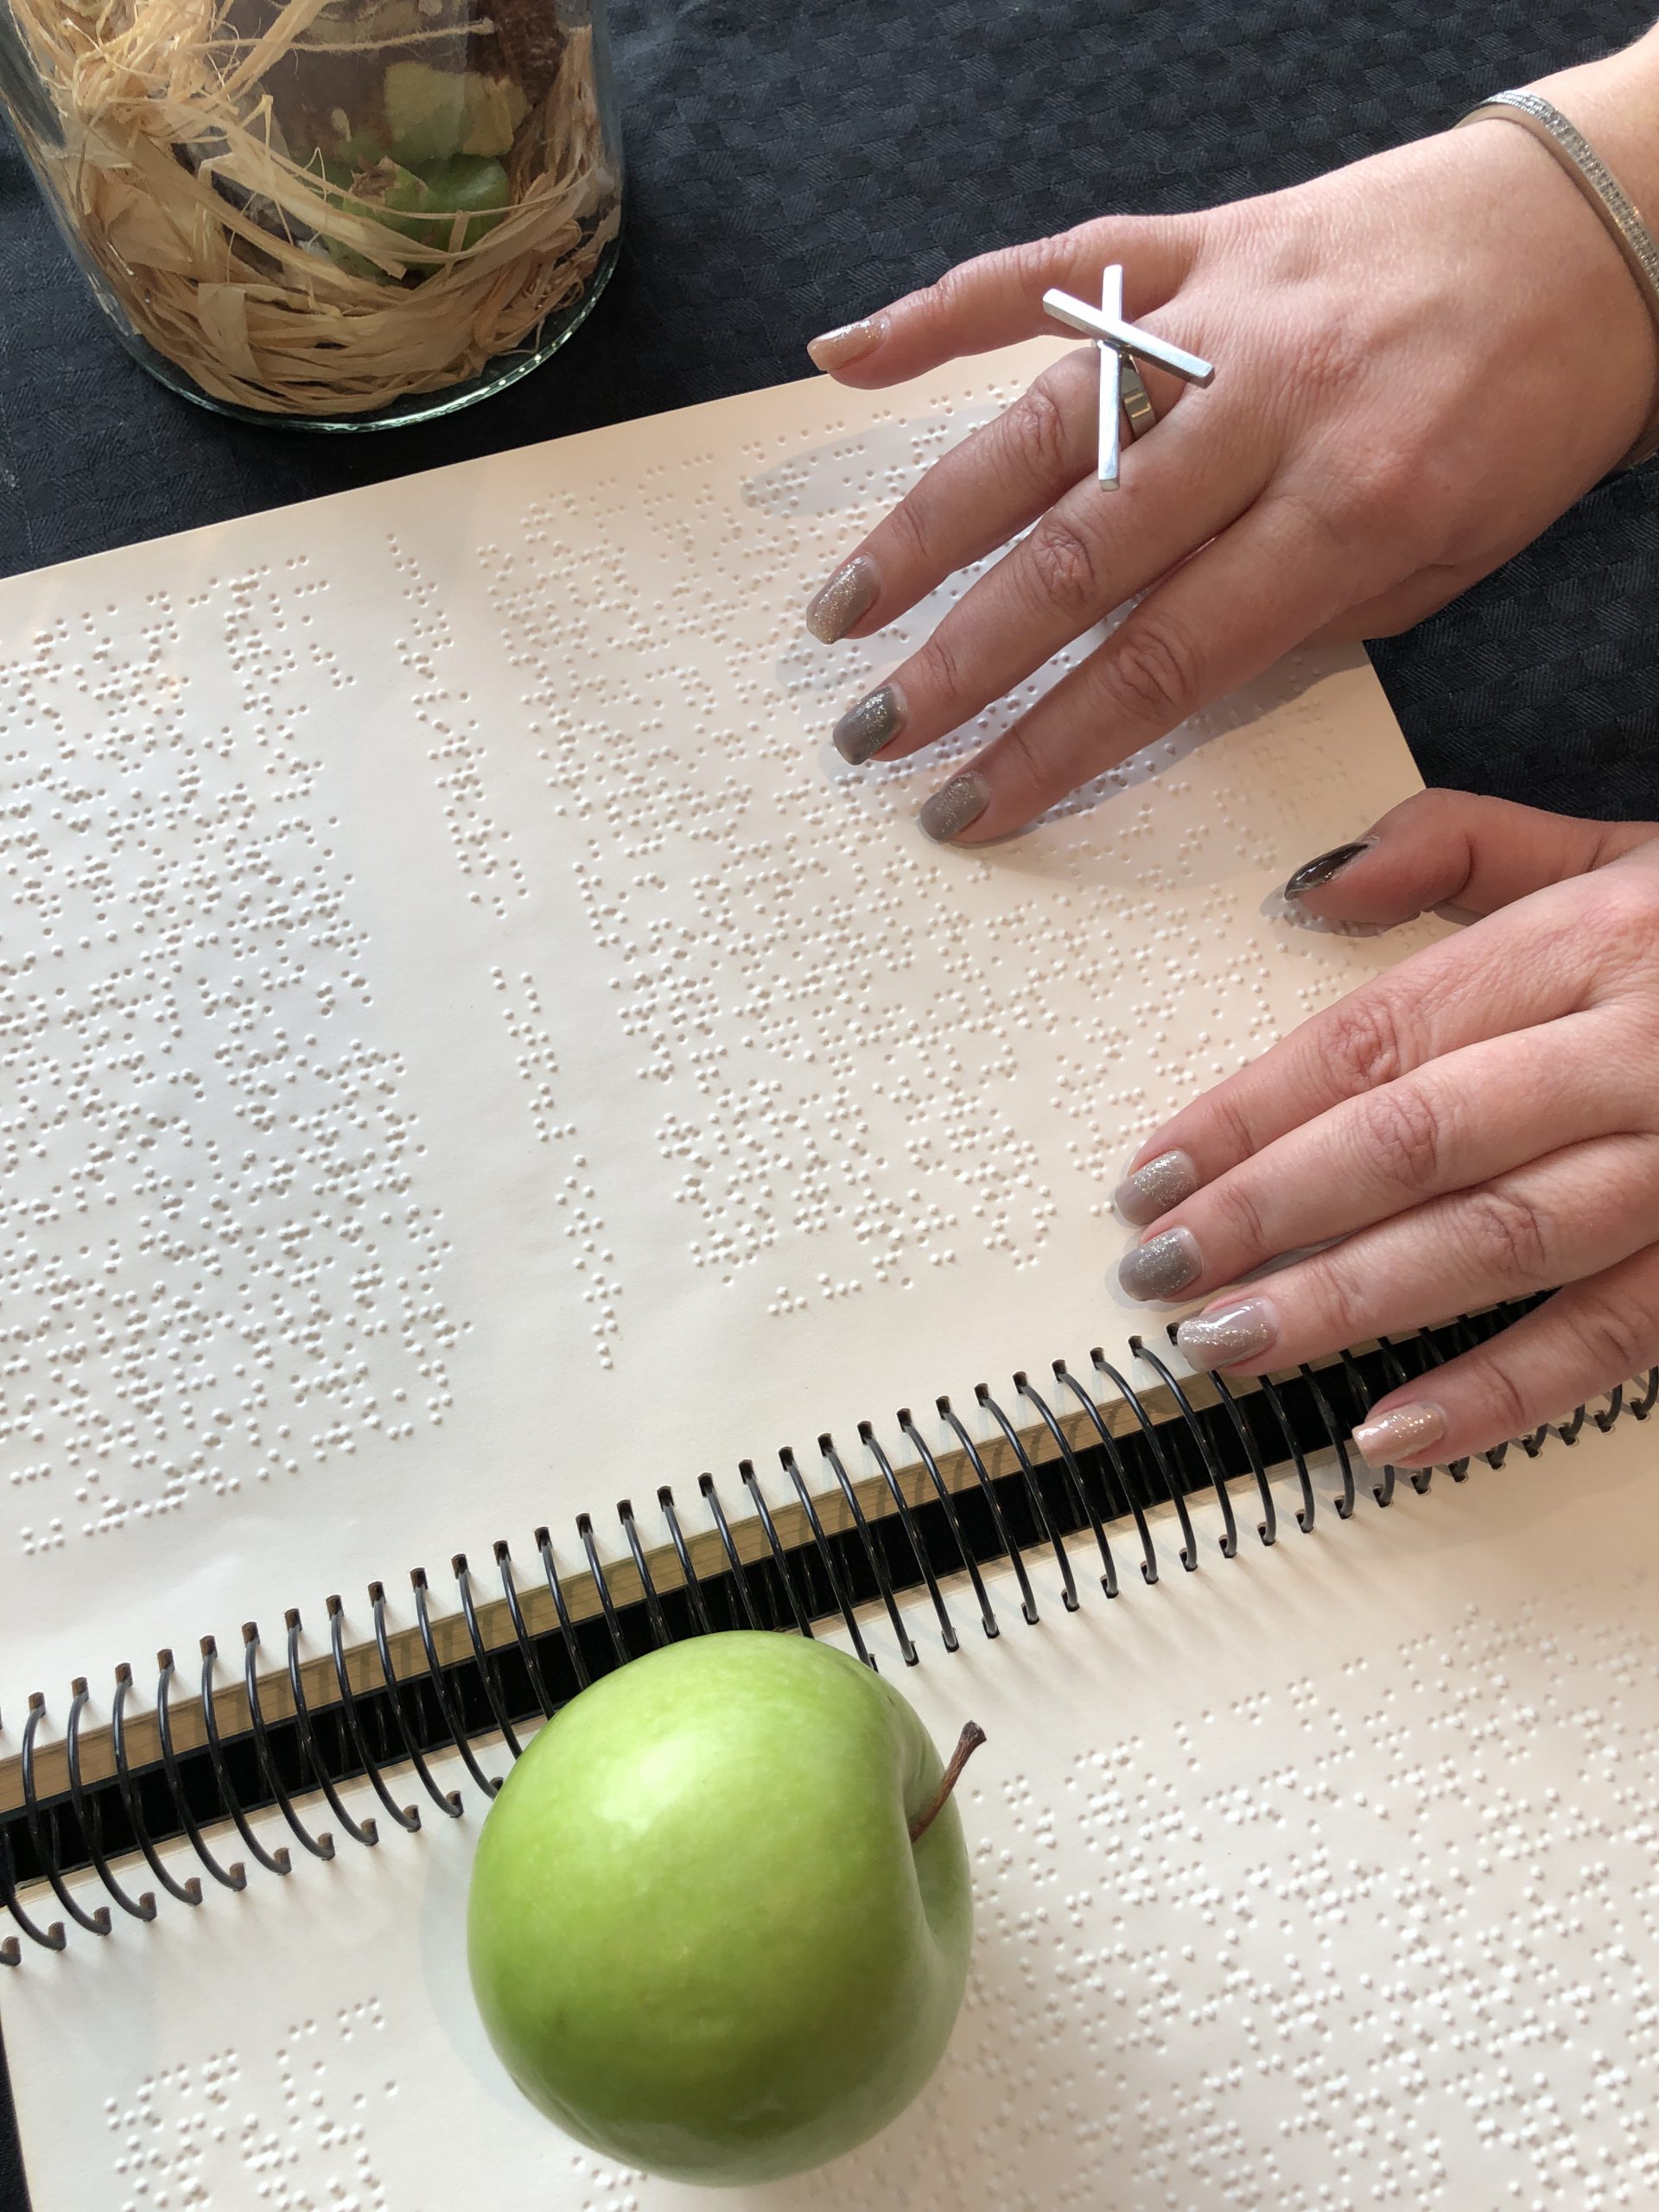 Bild - Händer som läser punktskrift med ett äpple bredvid